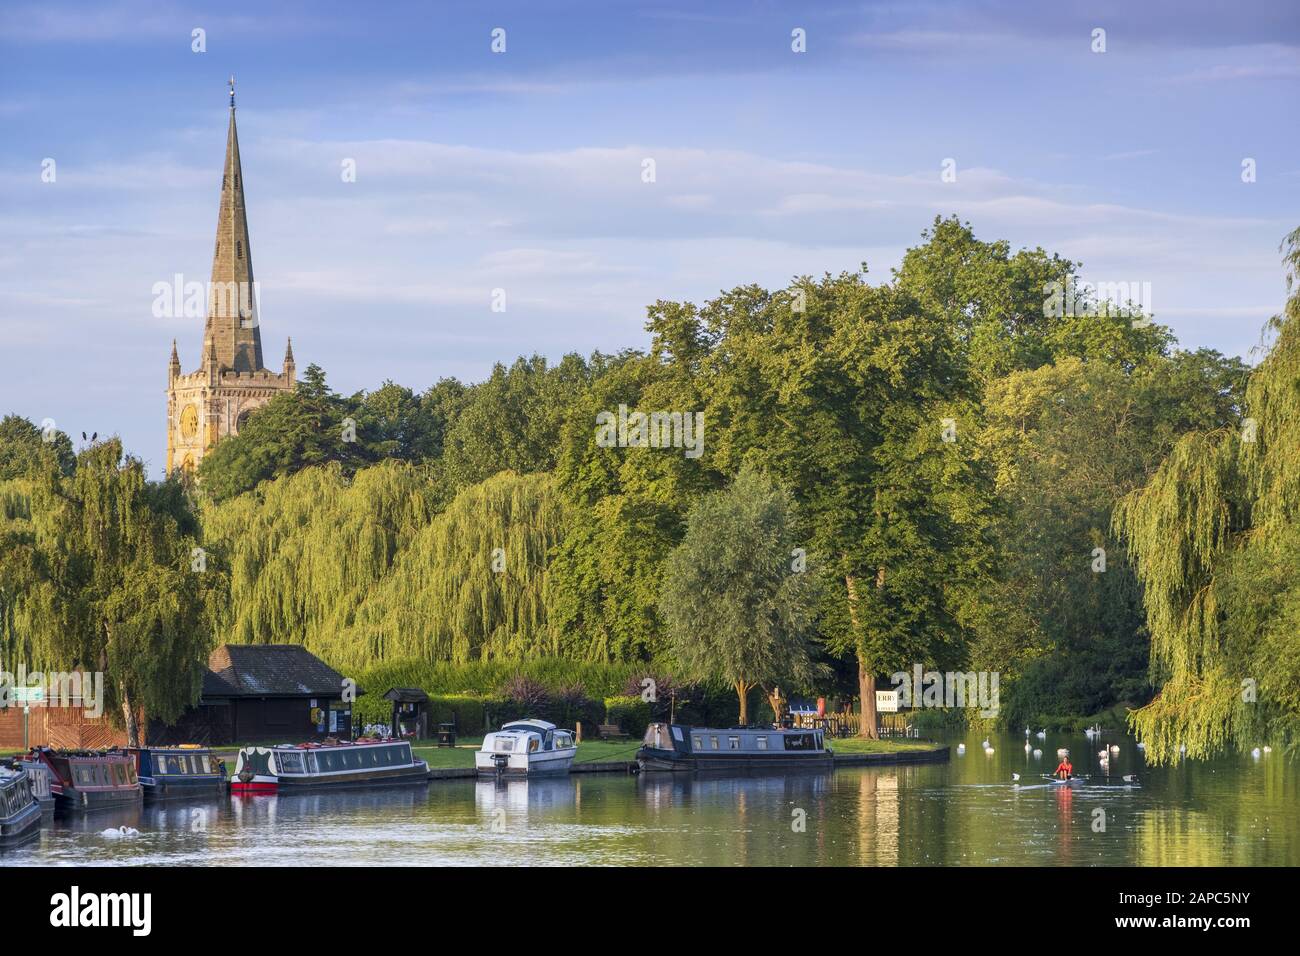 Vue sur la rivière Avon bordée de saules et la flèche de l'église Sainte-Trinité (lieu de sépulture de Shakespeare), Stratford-upon-Avon Banque D'Images